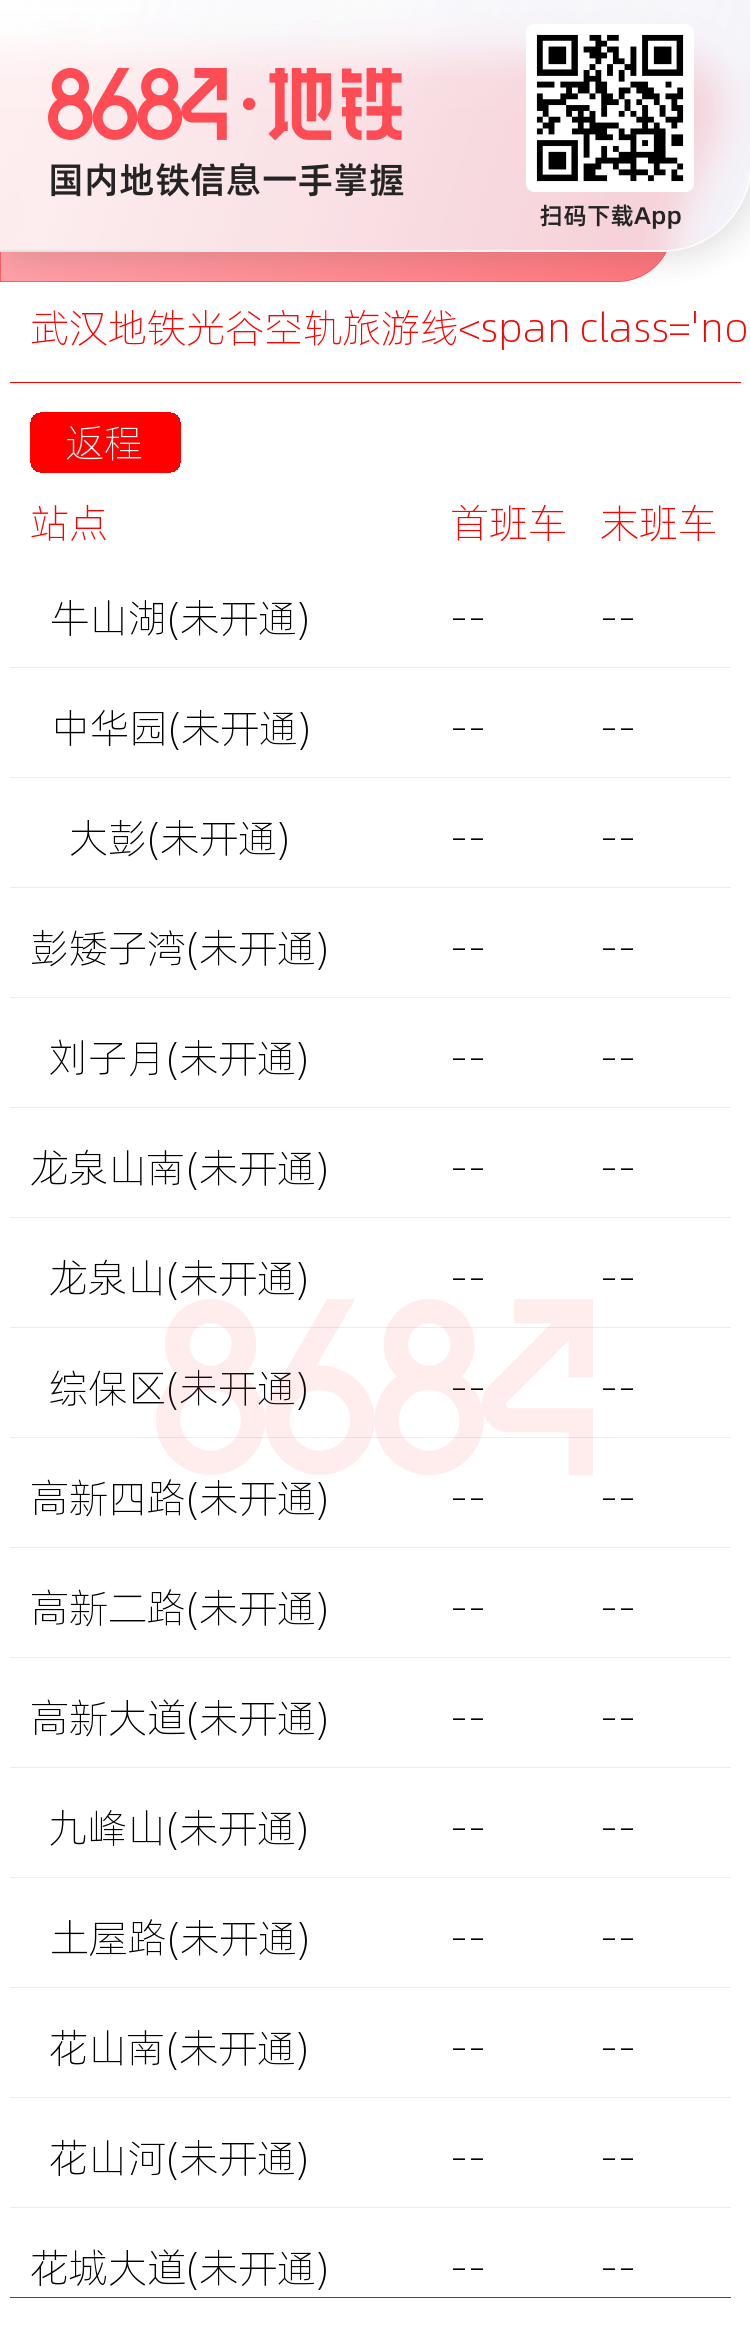 武汉地铁光谷空轨旅游线<span class='no'>(未开通)</span>运营时间表